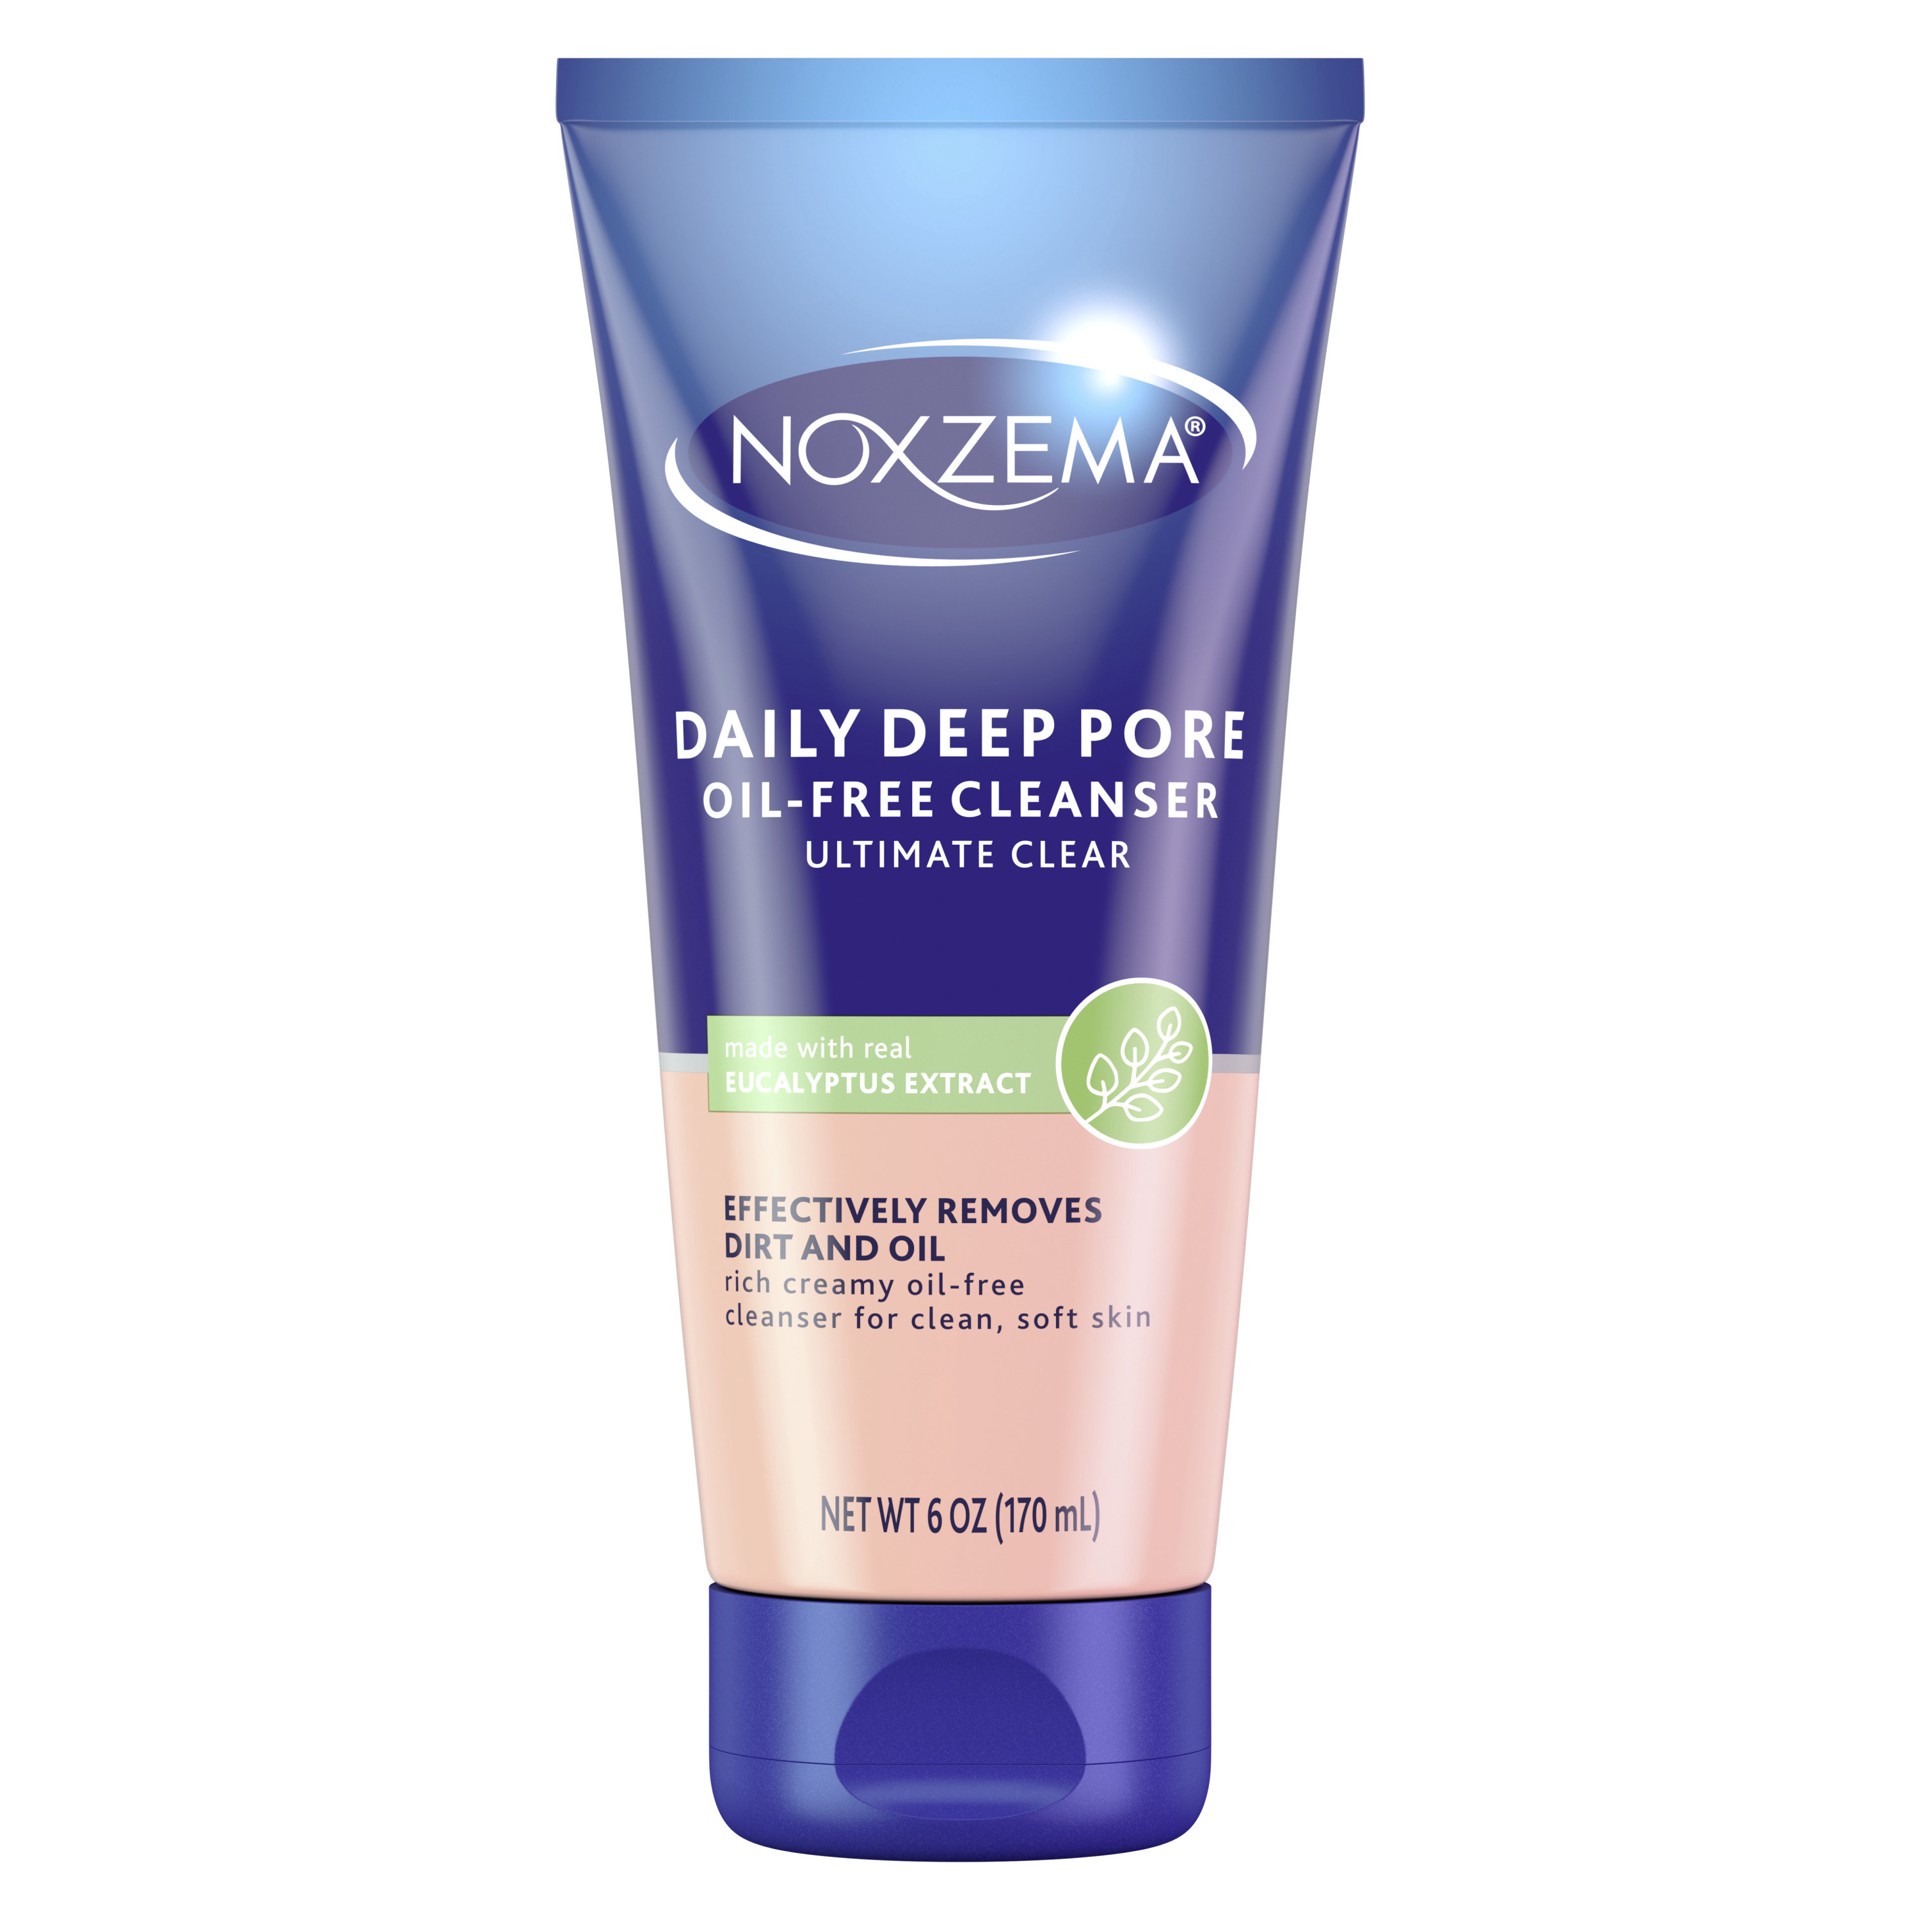 slide 1 of 33, Noxzema Daily Deep Pore Cleanser, 6 oz, 6 oz